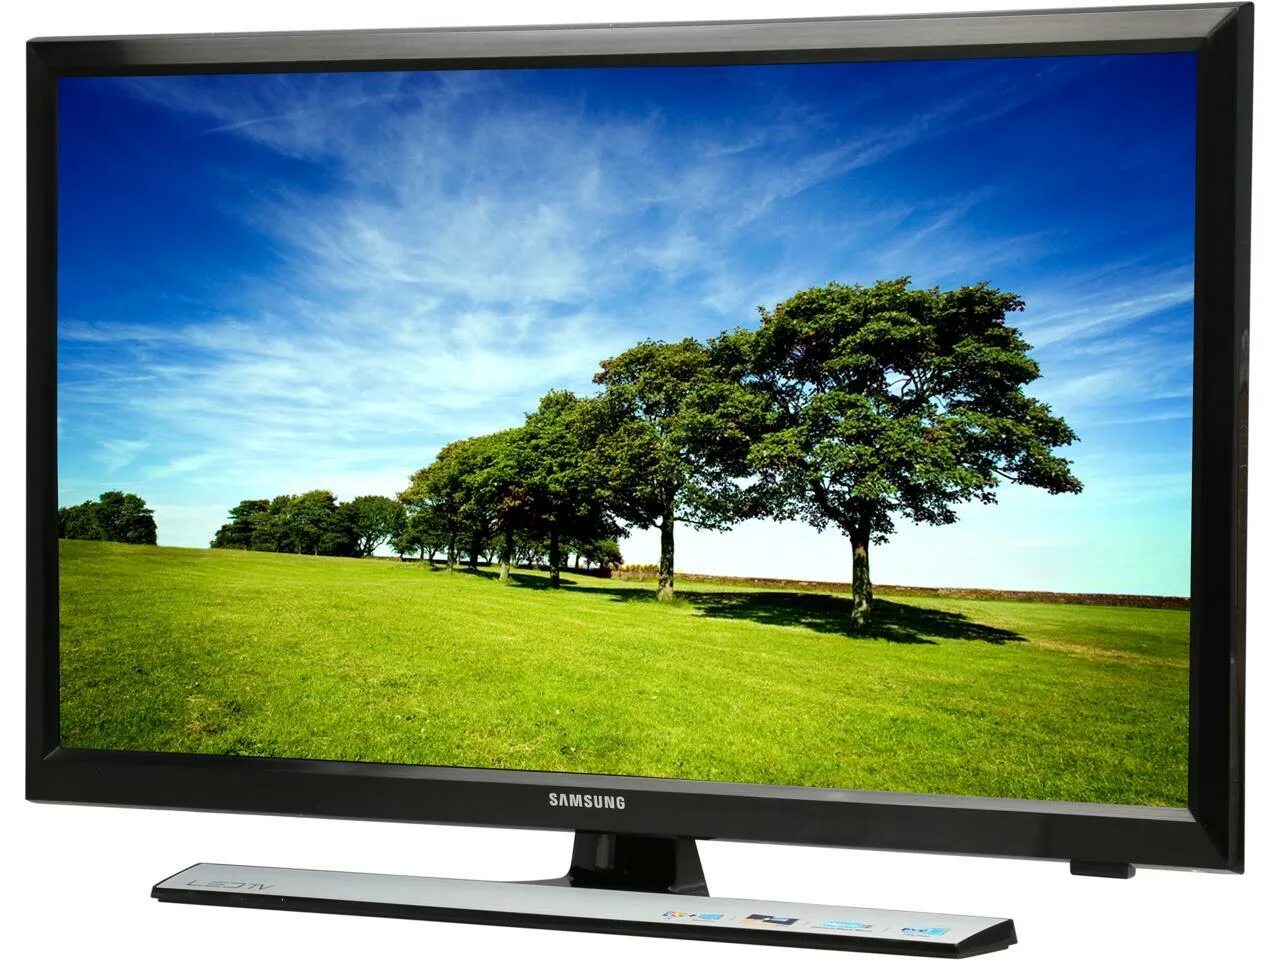 Телевизор купить в новгород недорого. Samsung t24e310ex. Телевизор Samsung t24e310ex. Samsung s24e370dl. Samsung led lt24e310ex.